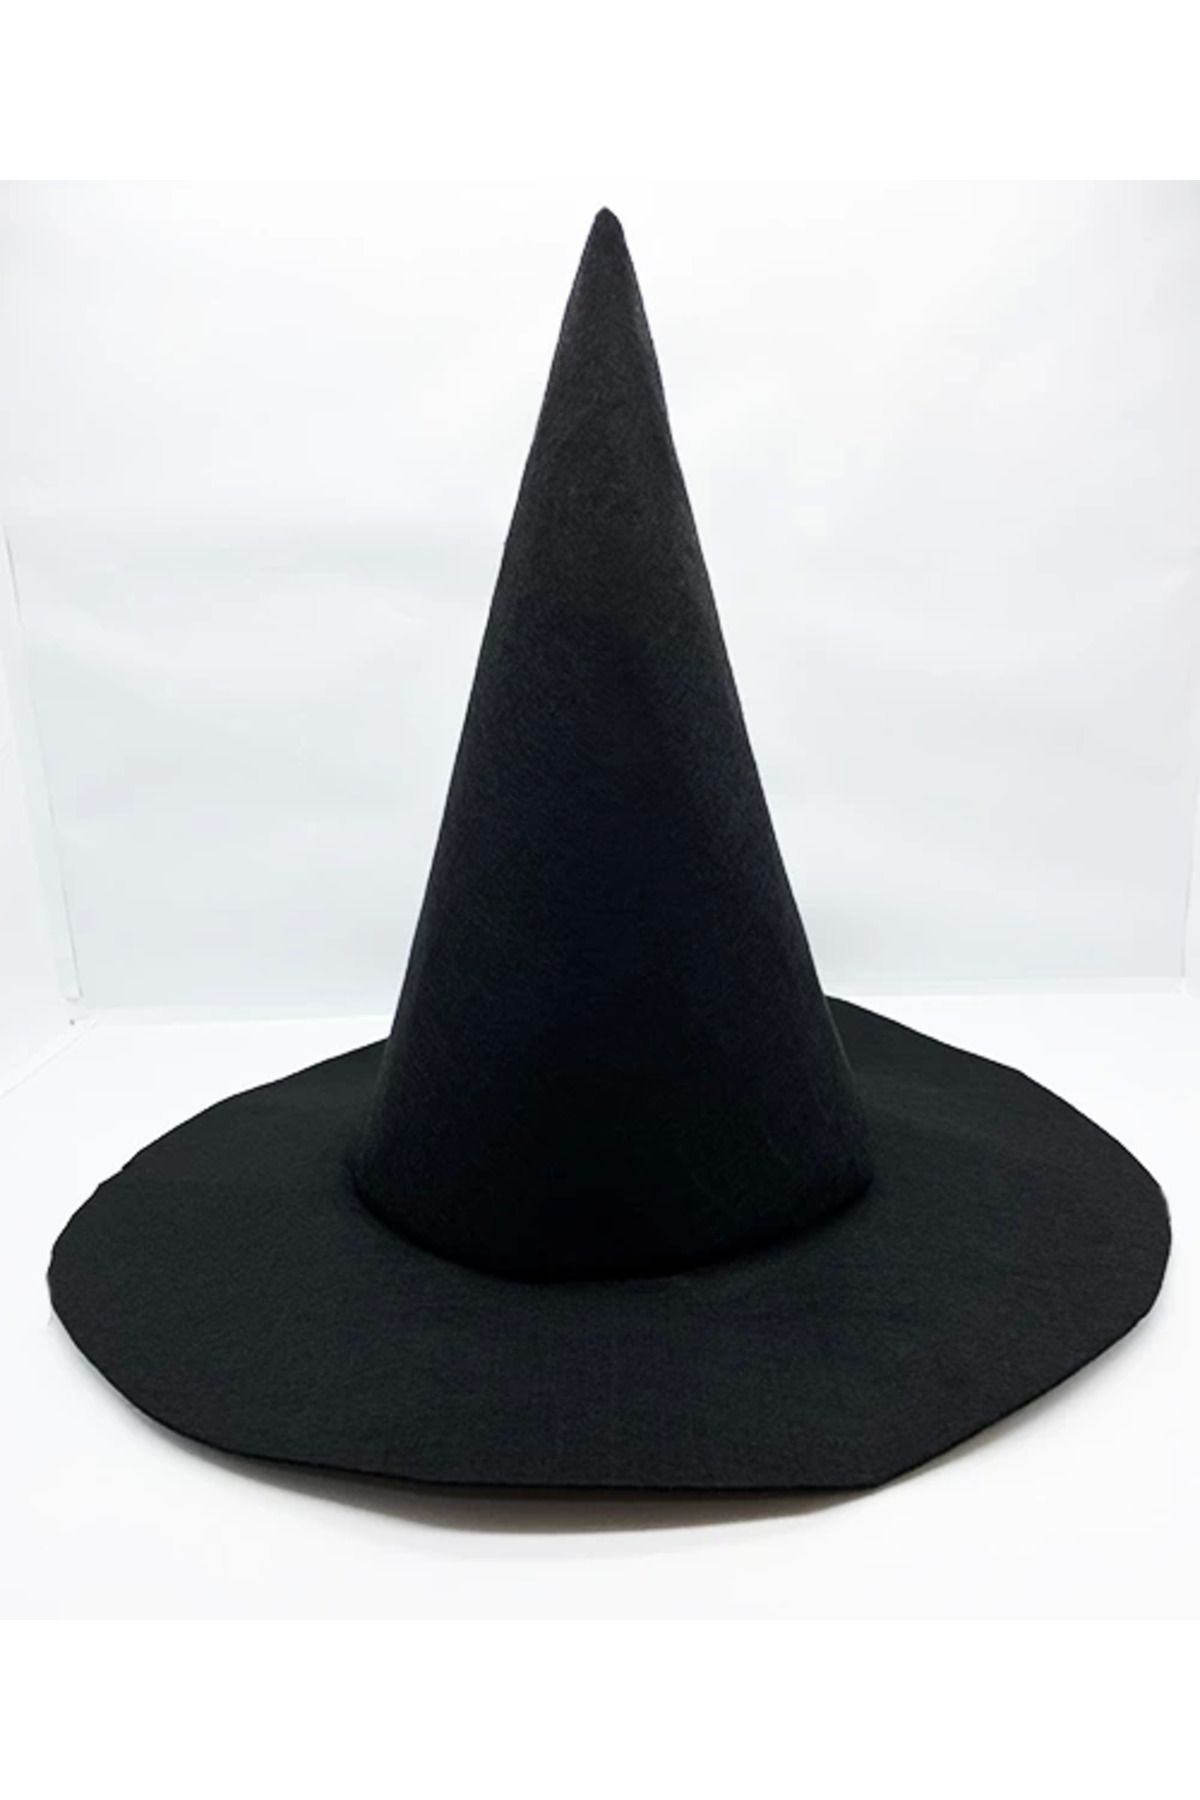 Wisdom Rain Siyah Renk Keçe Cadı Şapkası 35x38 Cm